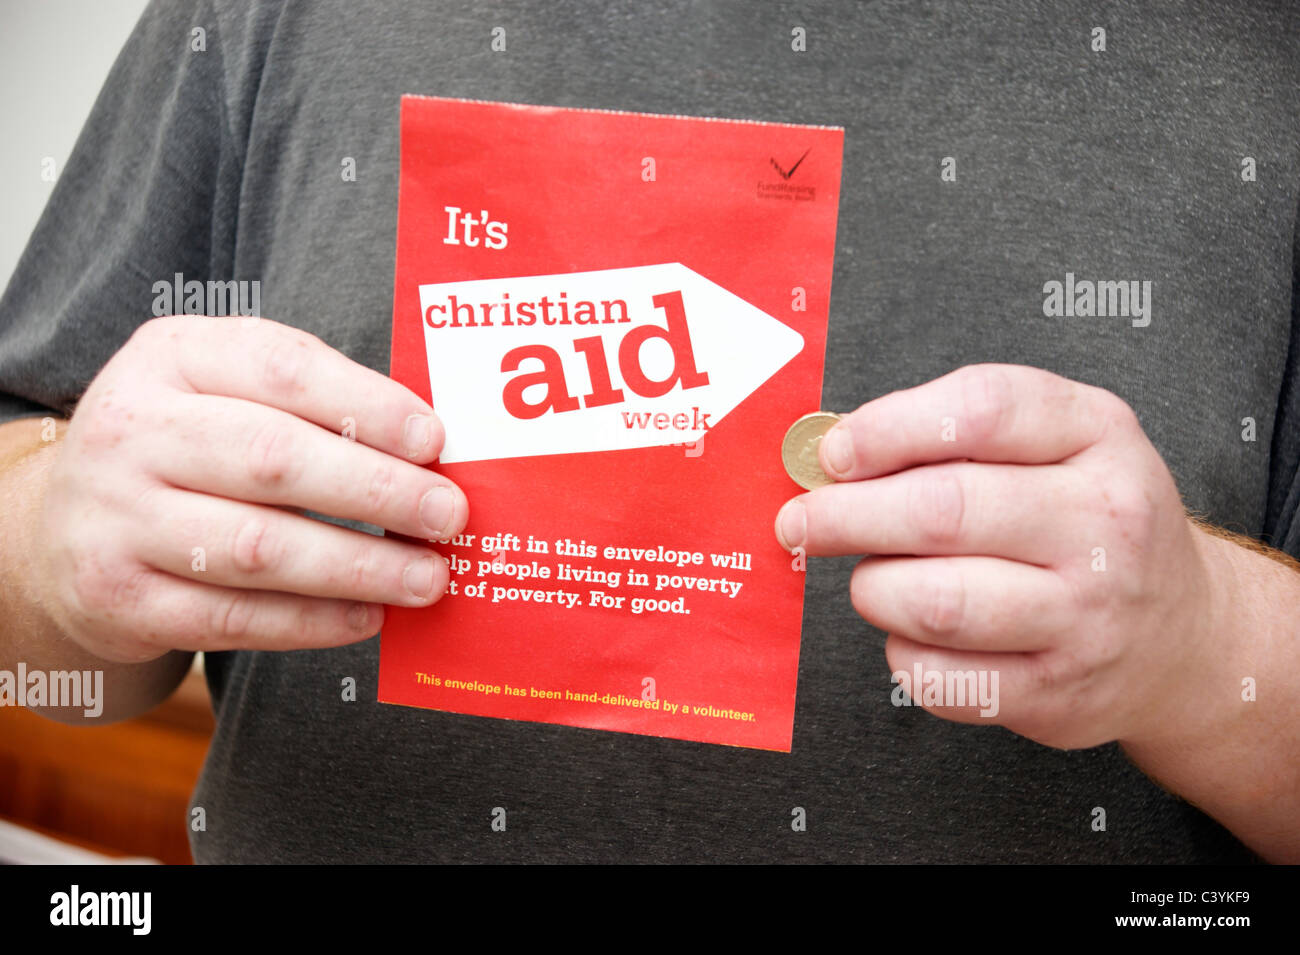 Uomo con la donazione di una moneta per una raccolta di beneficenza busta per Christian Aid settimana Foto Stock